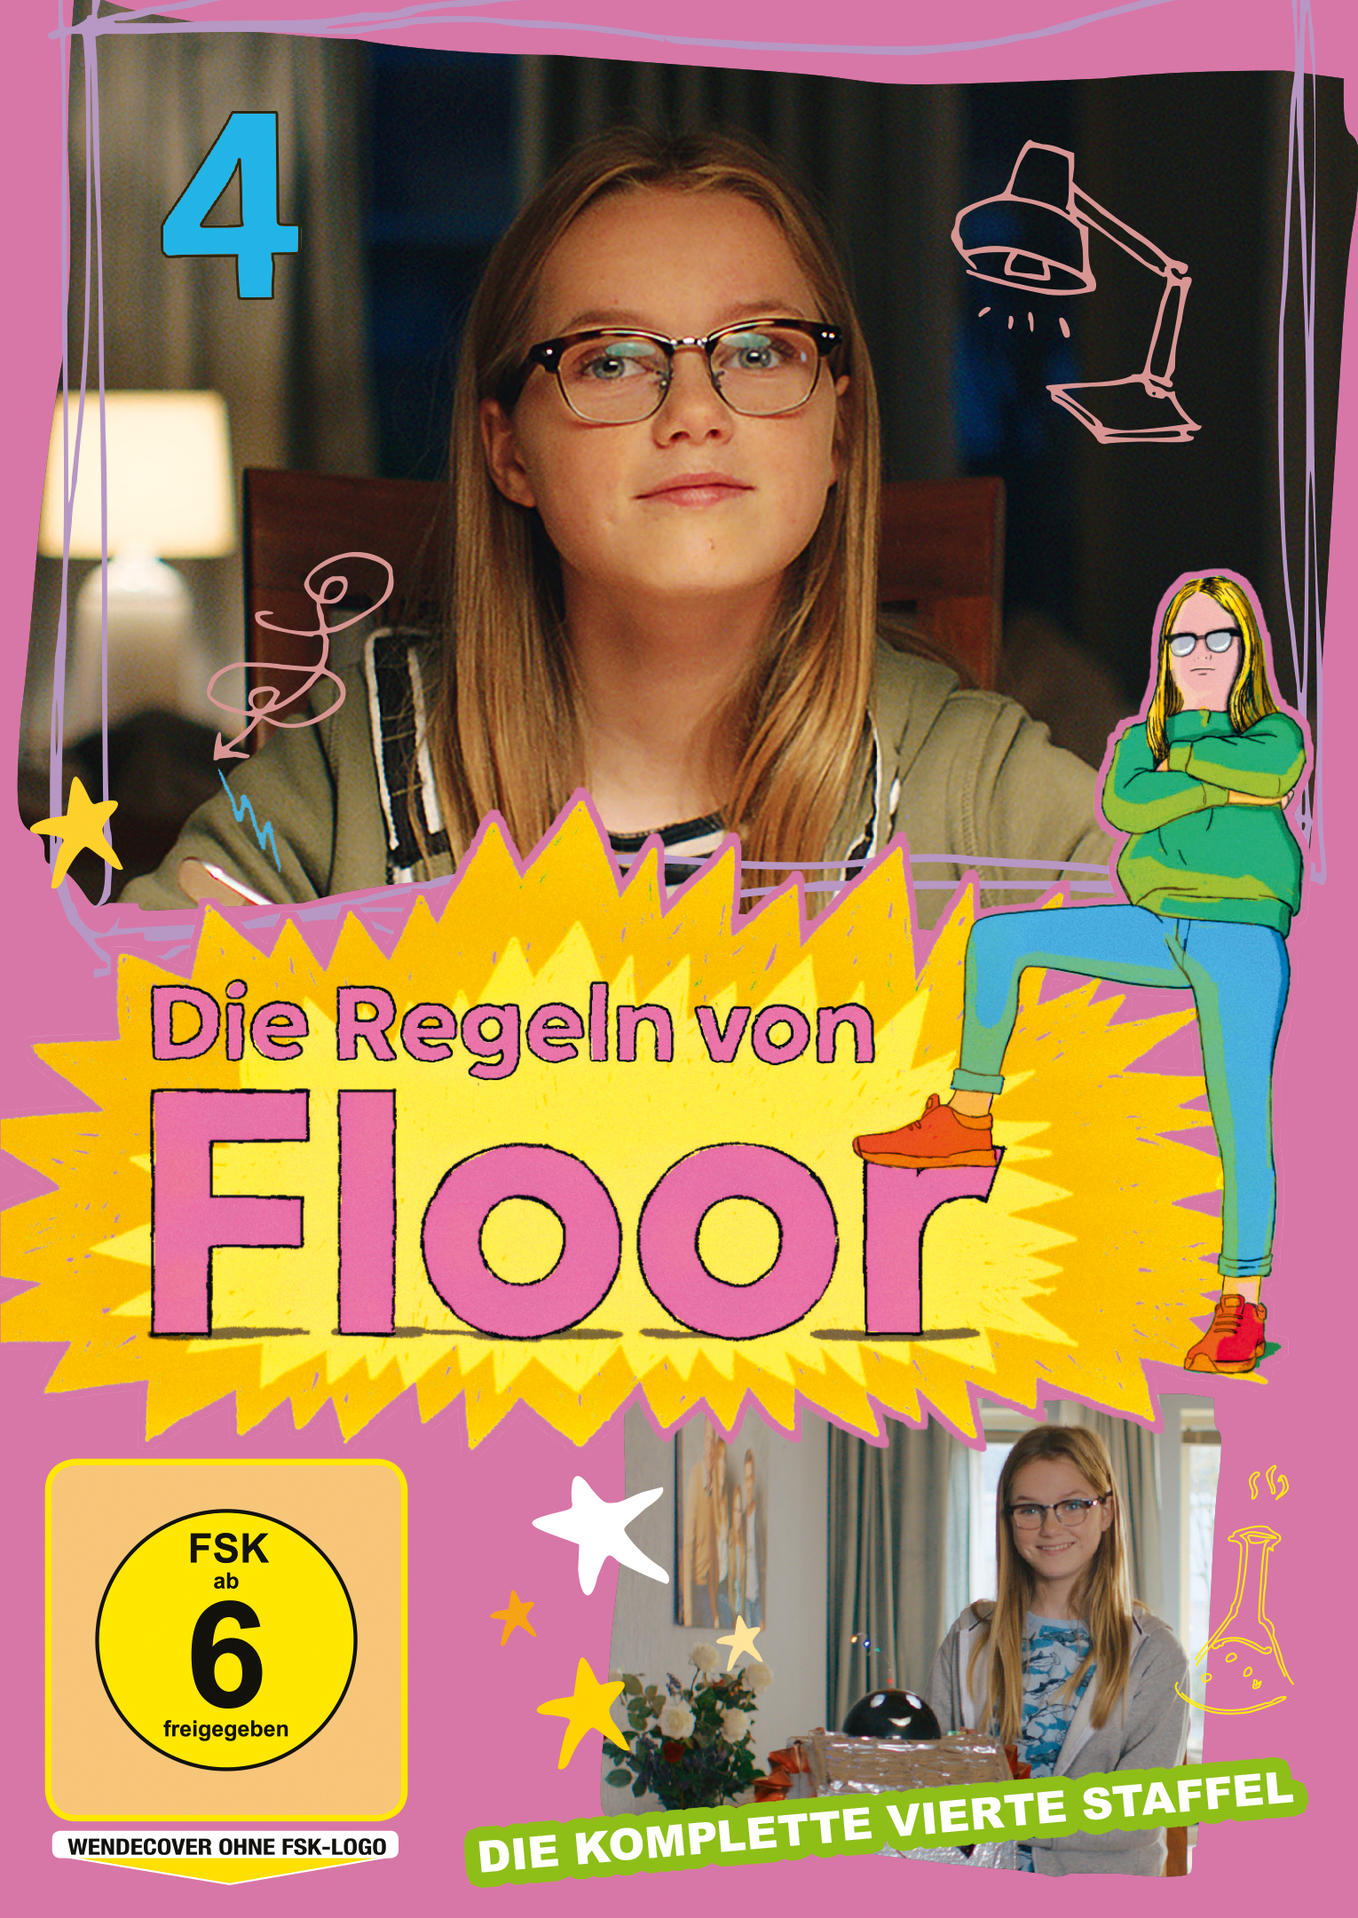 Die Regeln von Staffel DVD Floor 4 